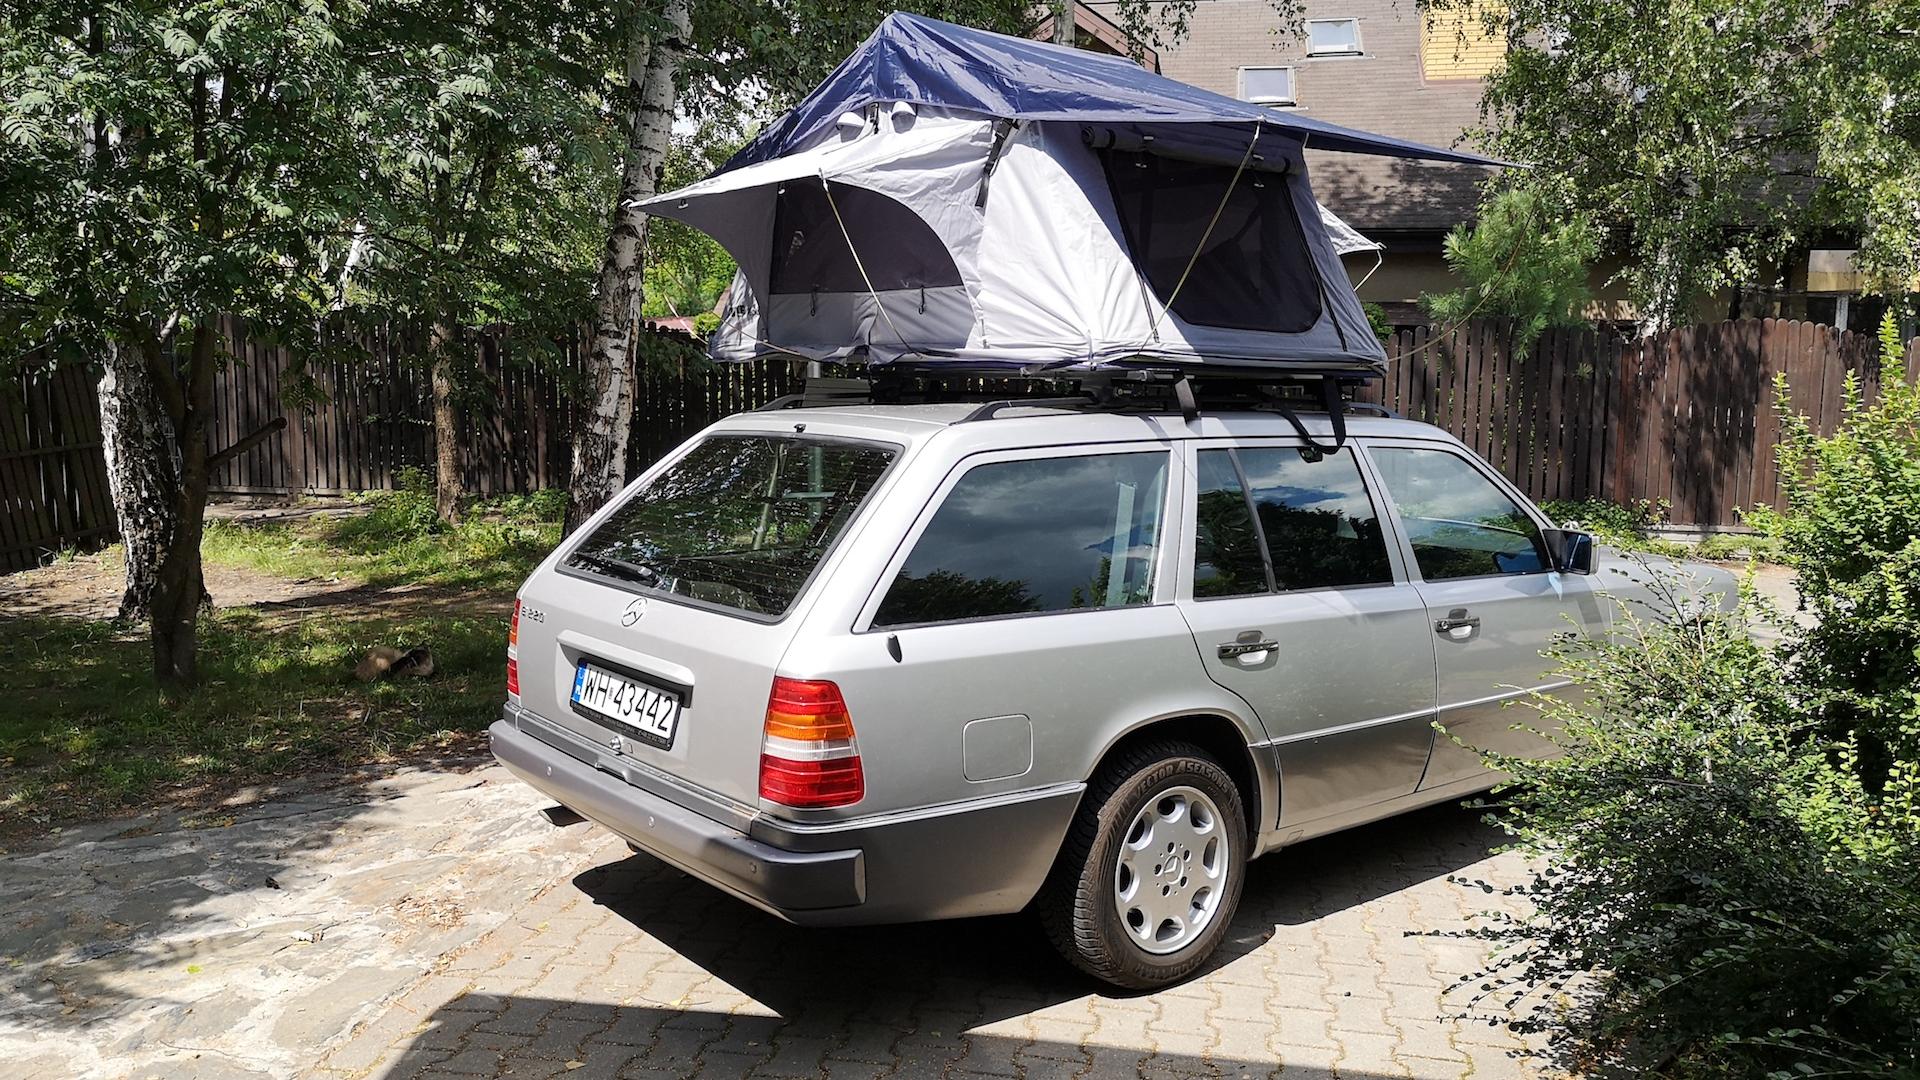 Namiot na dachu samochodu. Ty też możesz mieć (prawie) kampera!